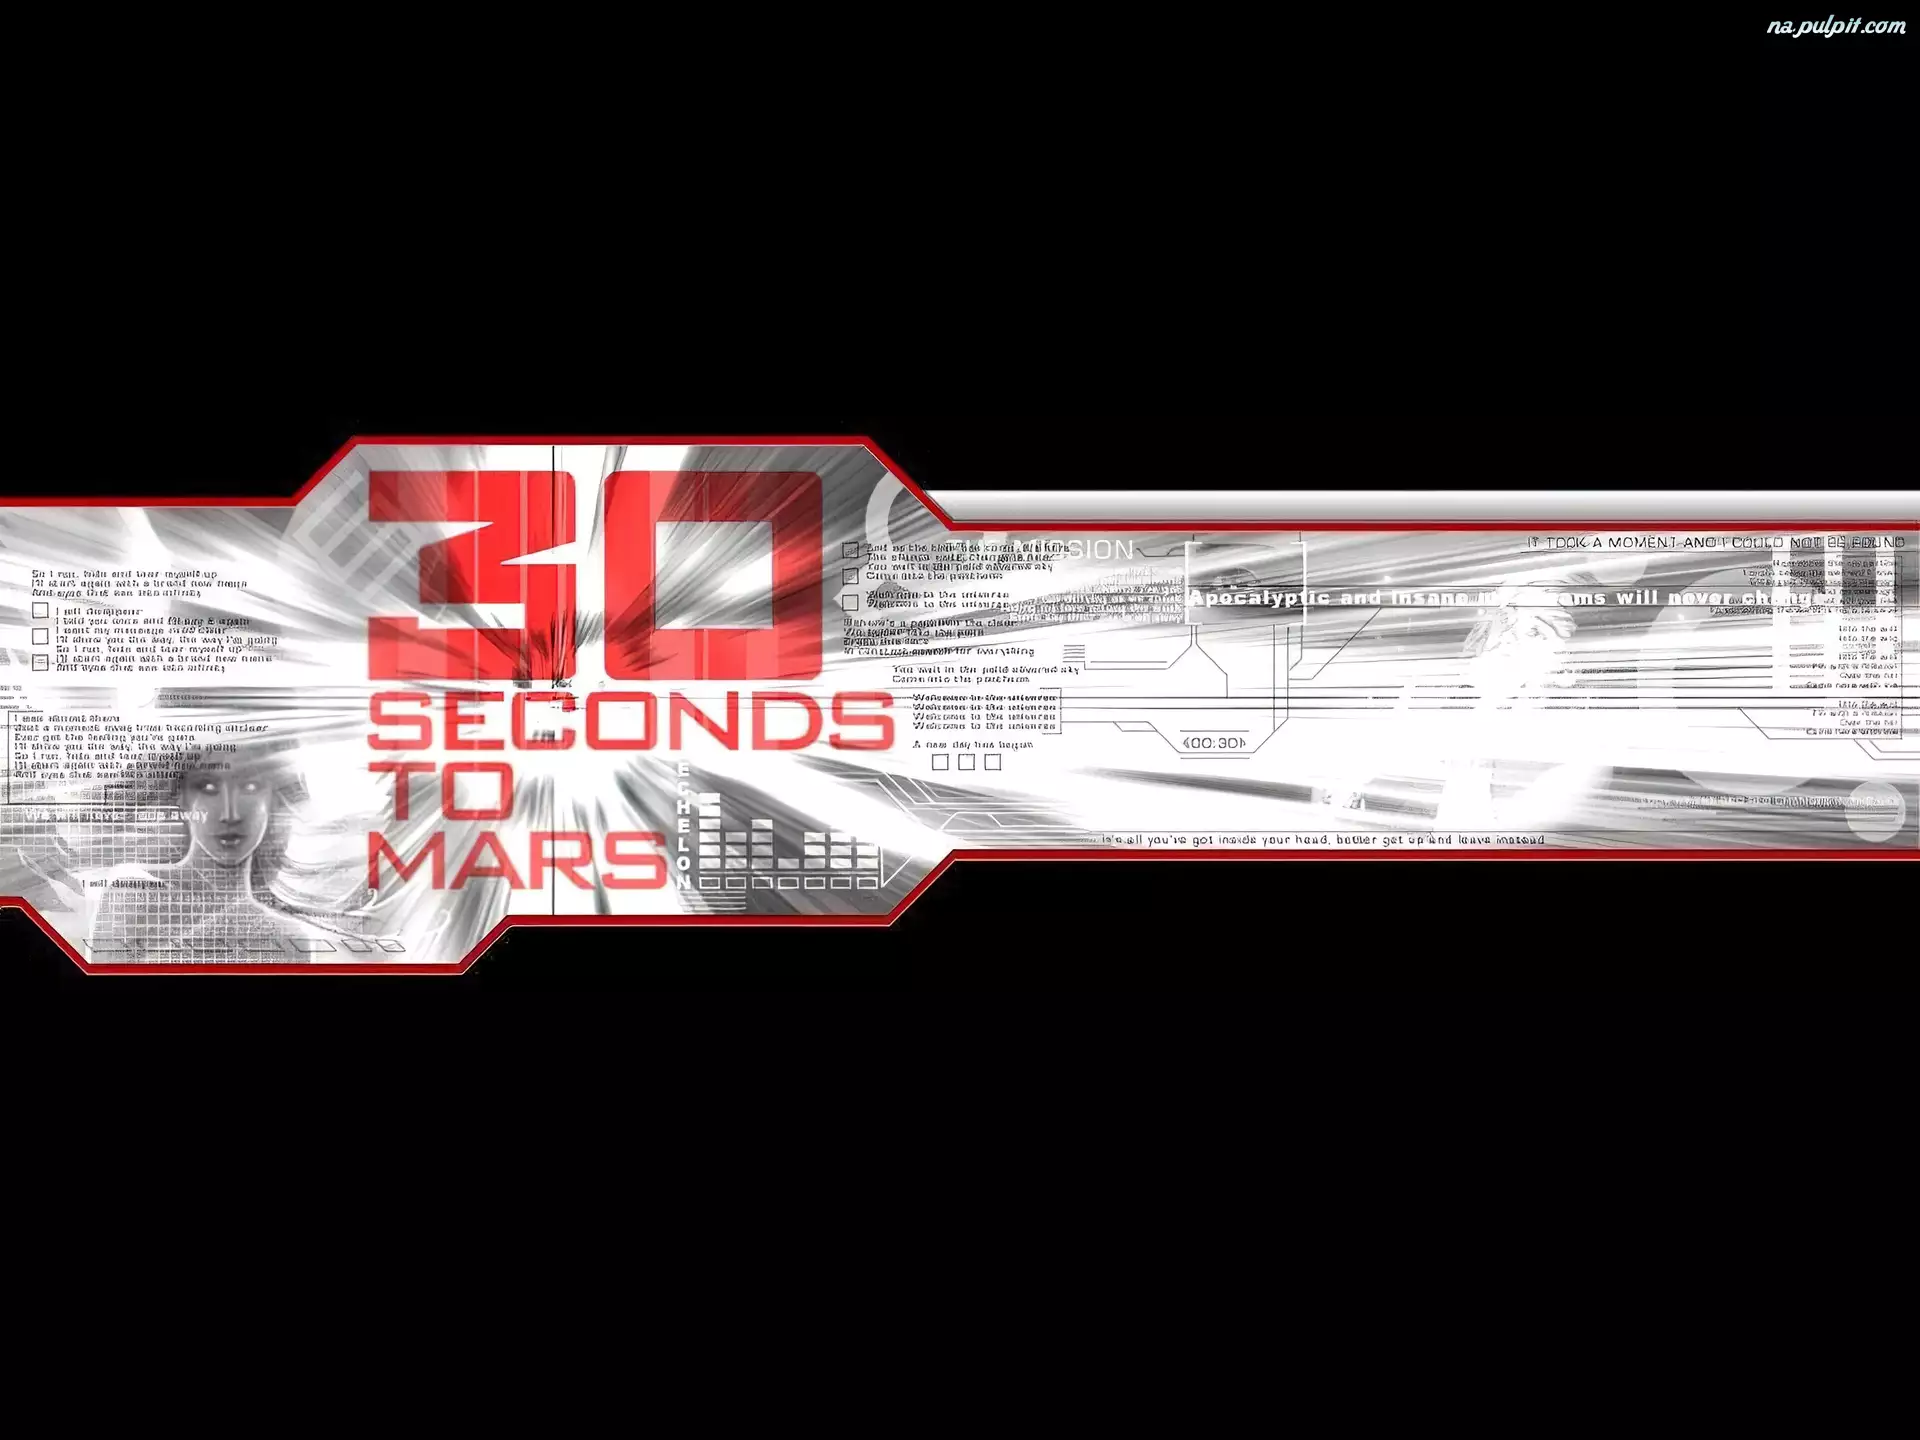 nazwa zespołu, 30 Seconds To Mars